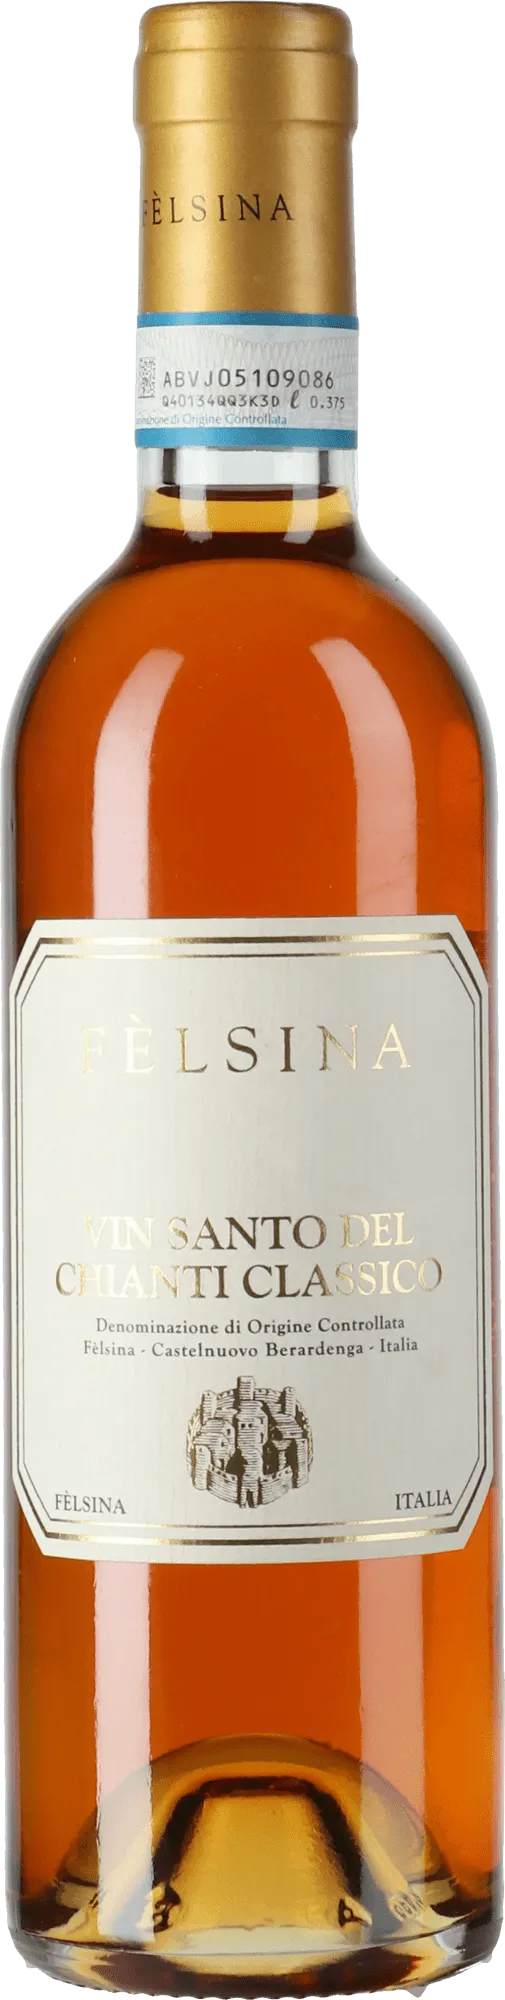 Bottle of Fèlsina Vin Santo del Chianti Classico from search results